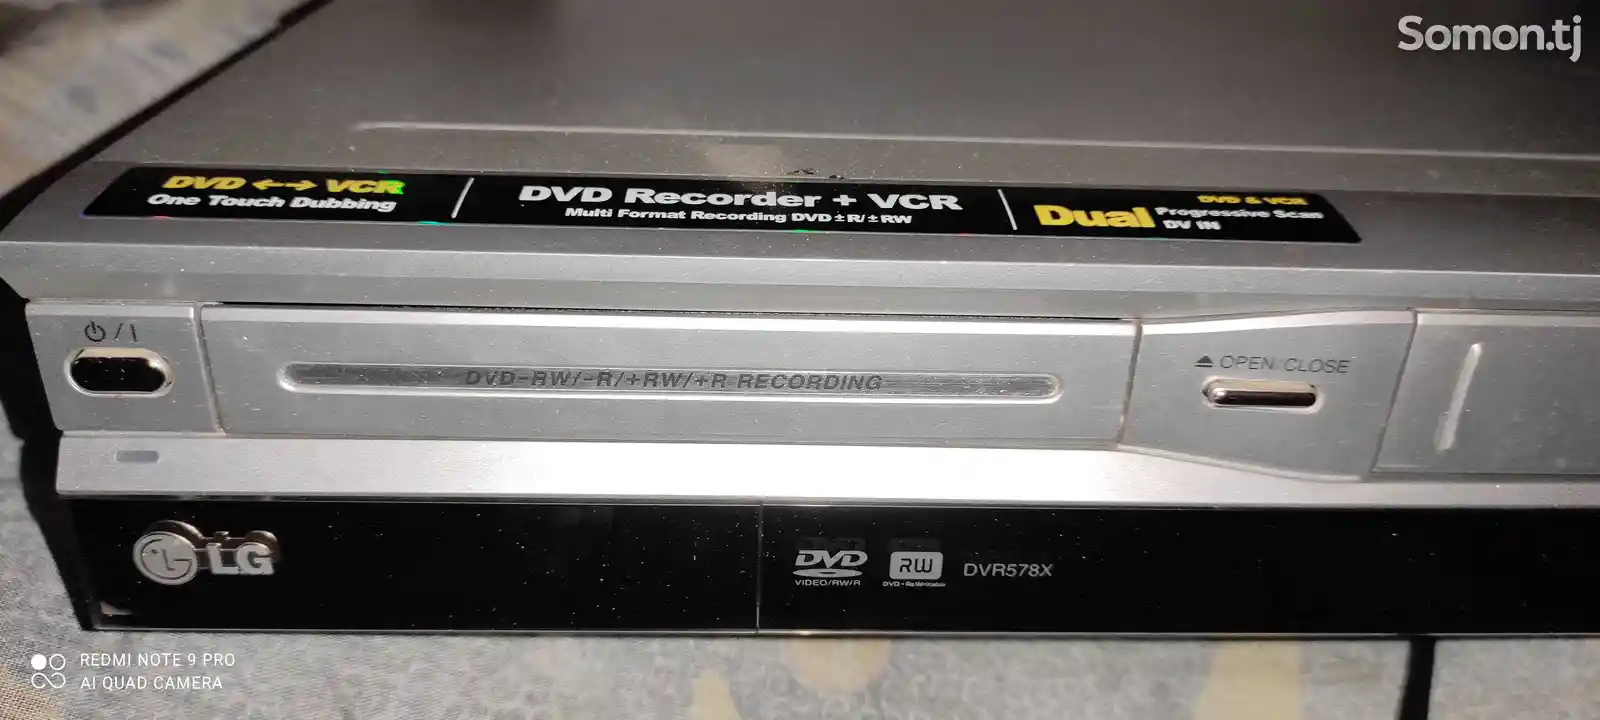 Видео/DVD записывающие LG-3